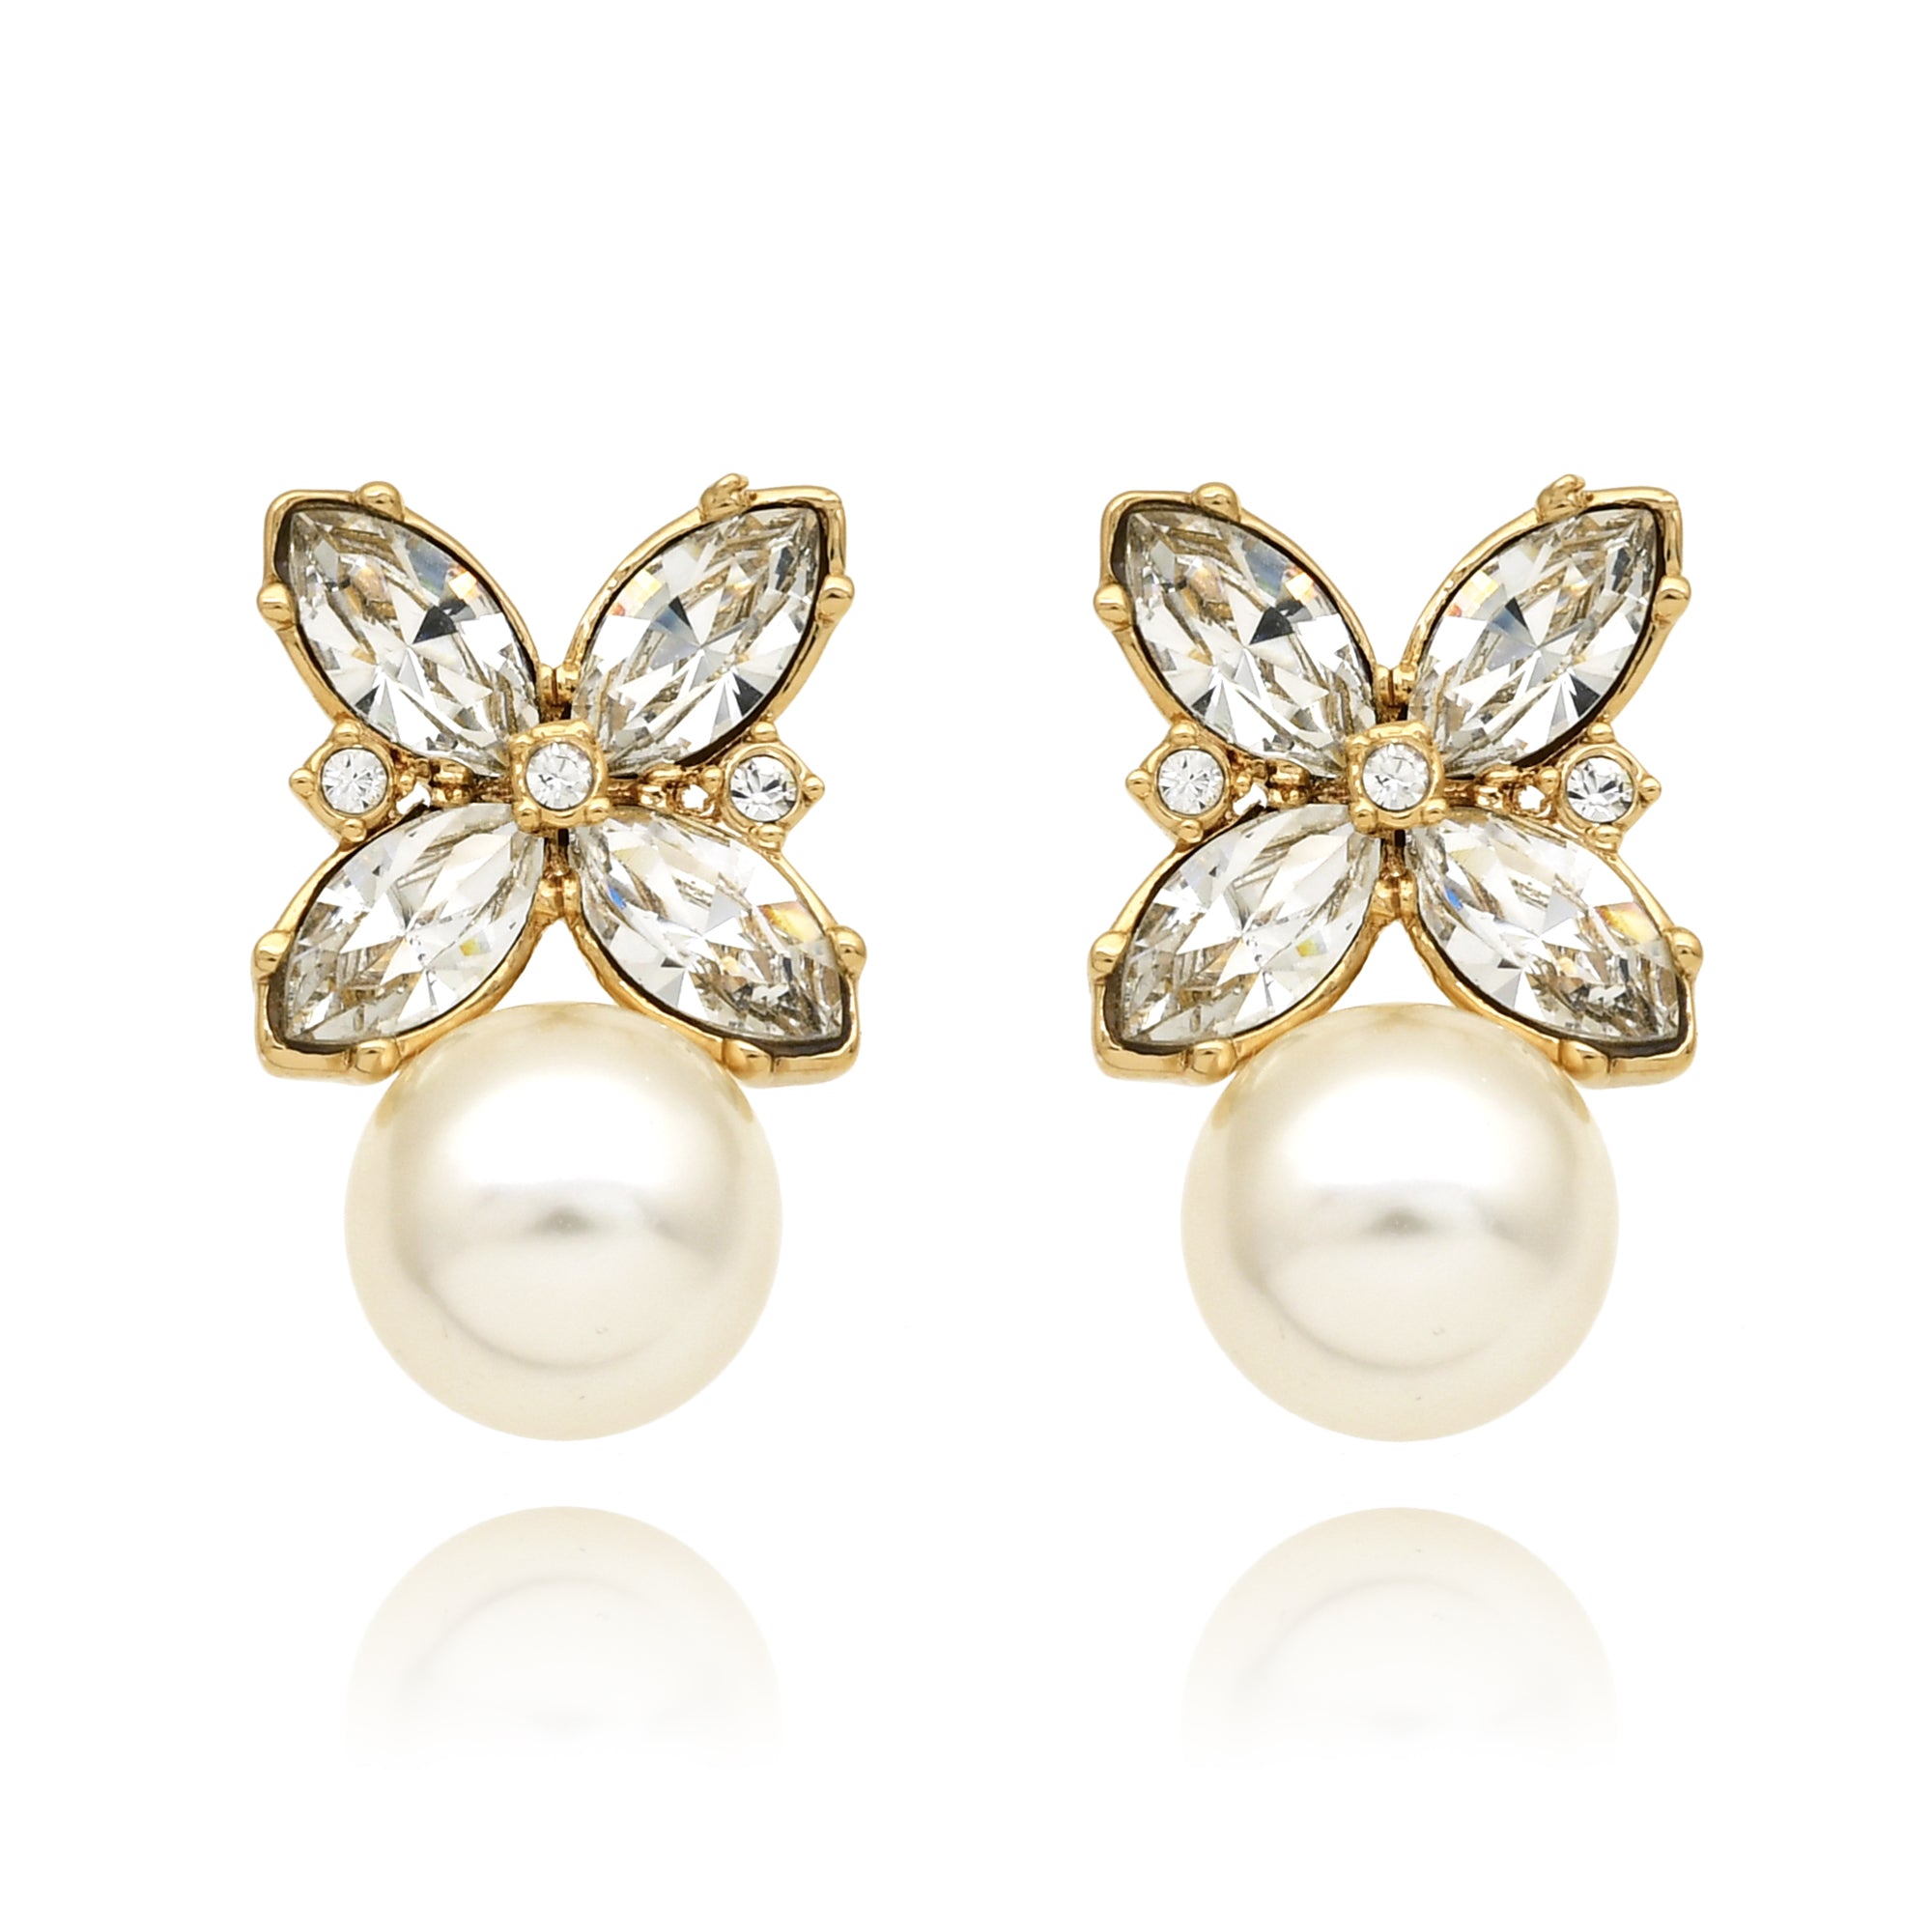 Perlene earrings